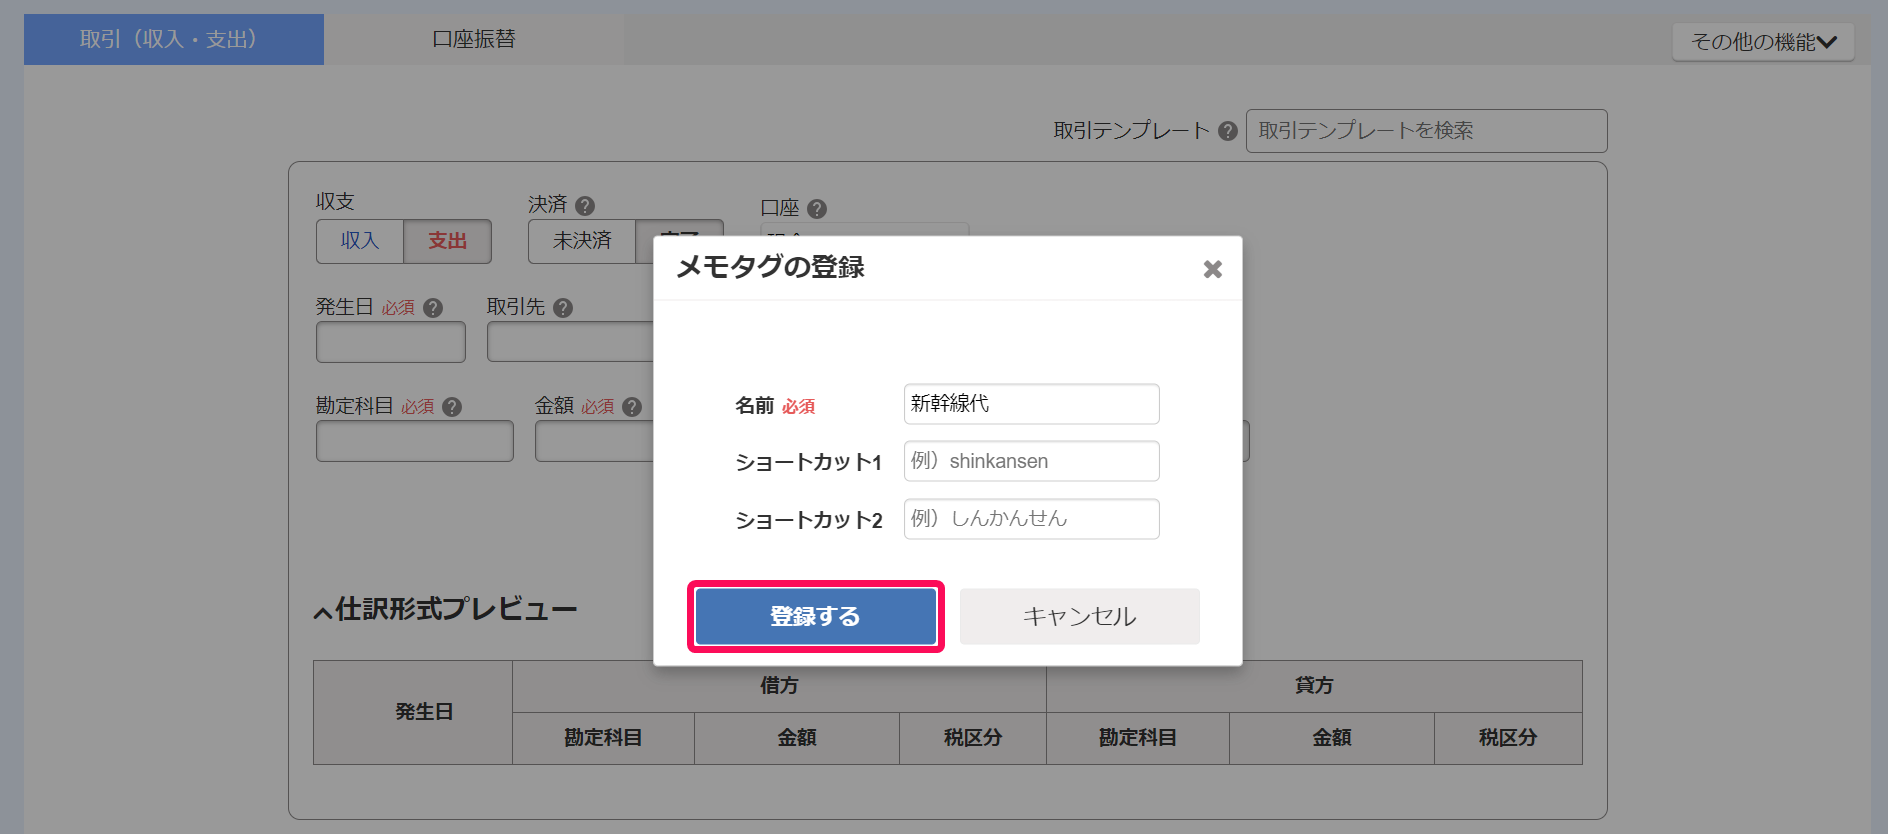 メモタグの登録画面で登録するボタンを指し示しているスクリーンショット